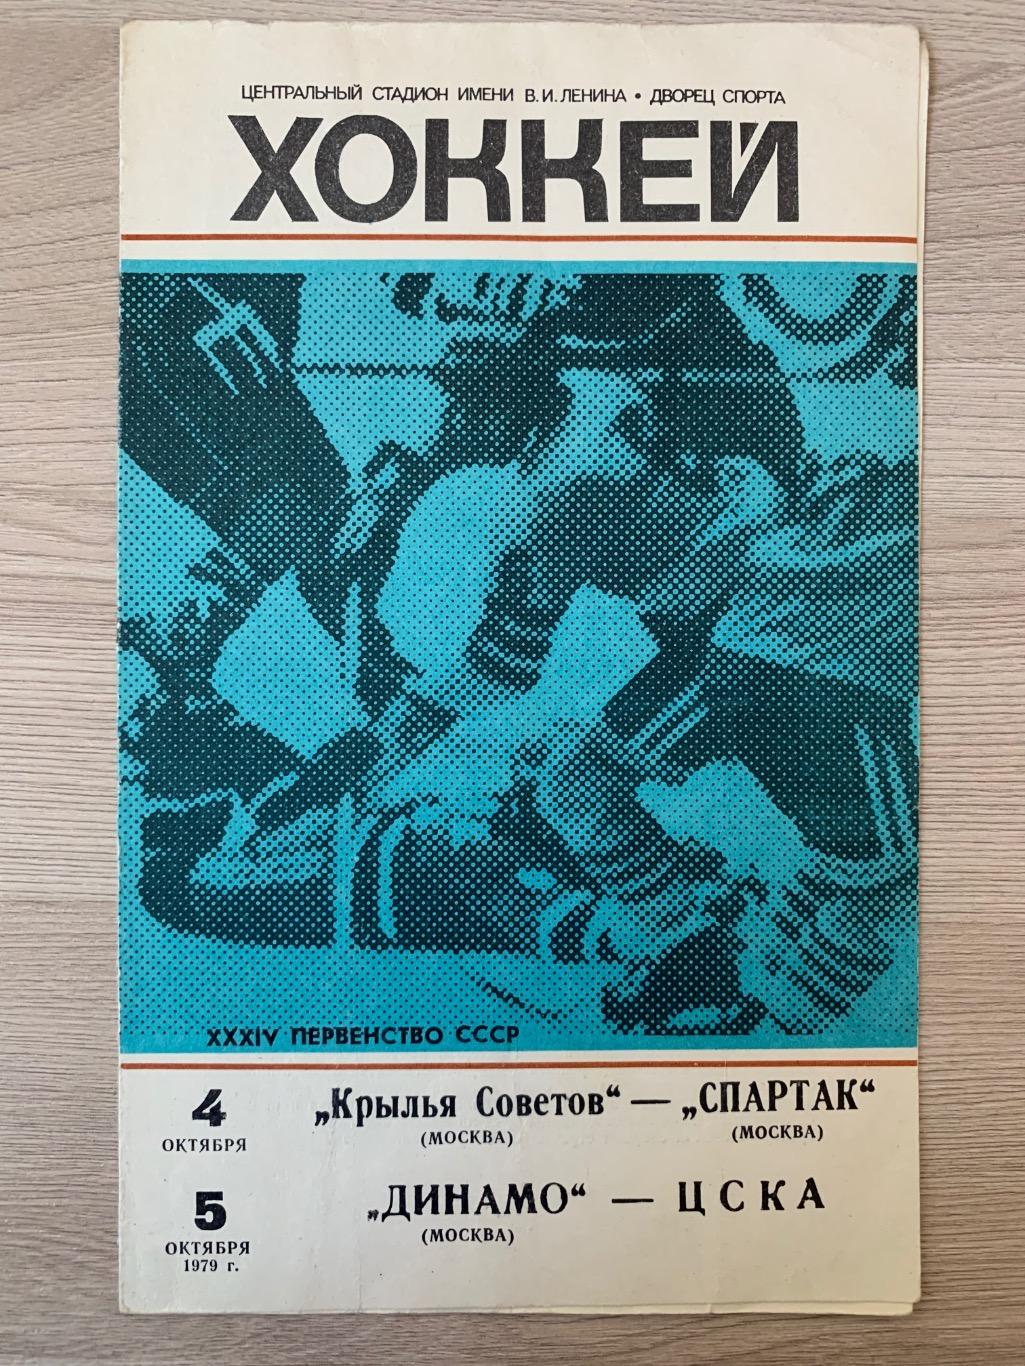 Крылья Советов - Спартак / Динамо - ЦСКА 4-5.10.1979